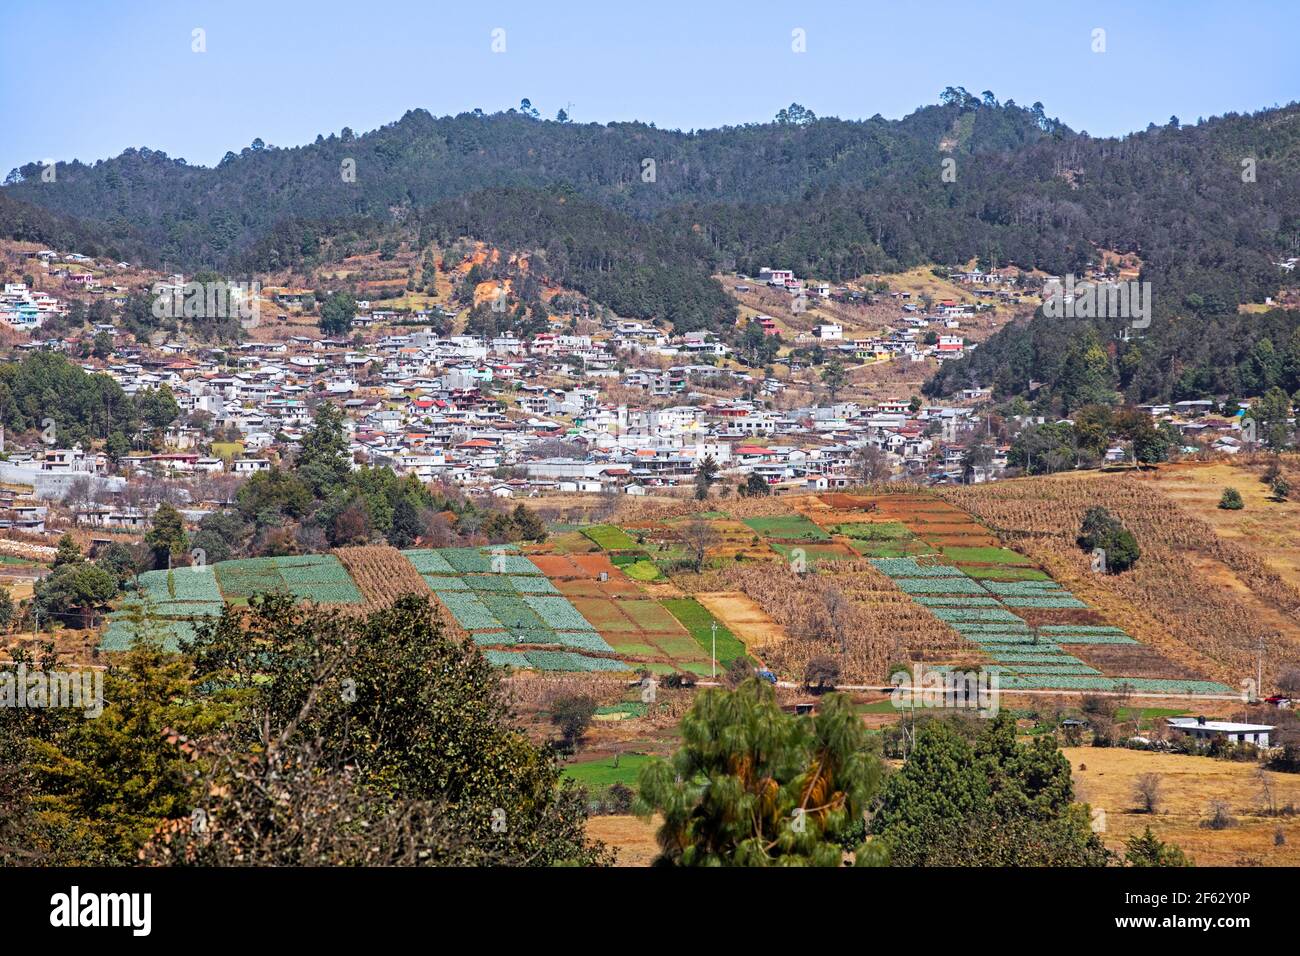 Colture su campi agricoli e villaggio negli altopiani Chiapas vicino alla città di San Juan Chamula, Chiapas, Messico meridionale Foto Stock